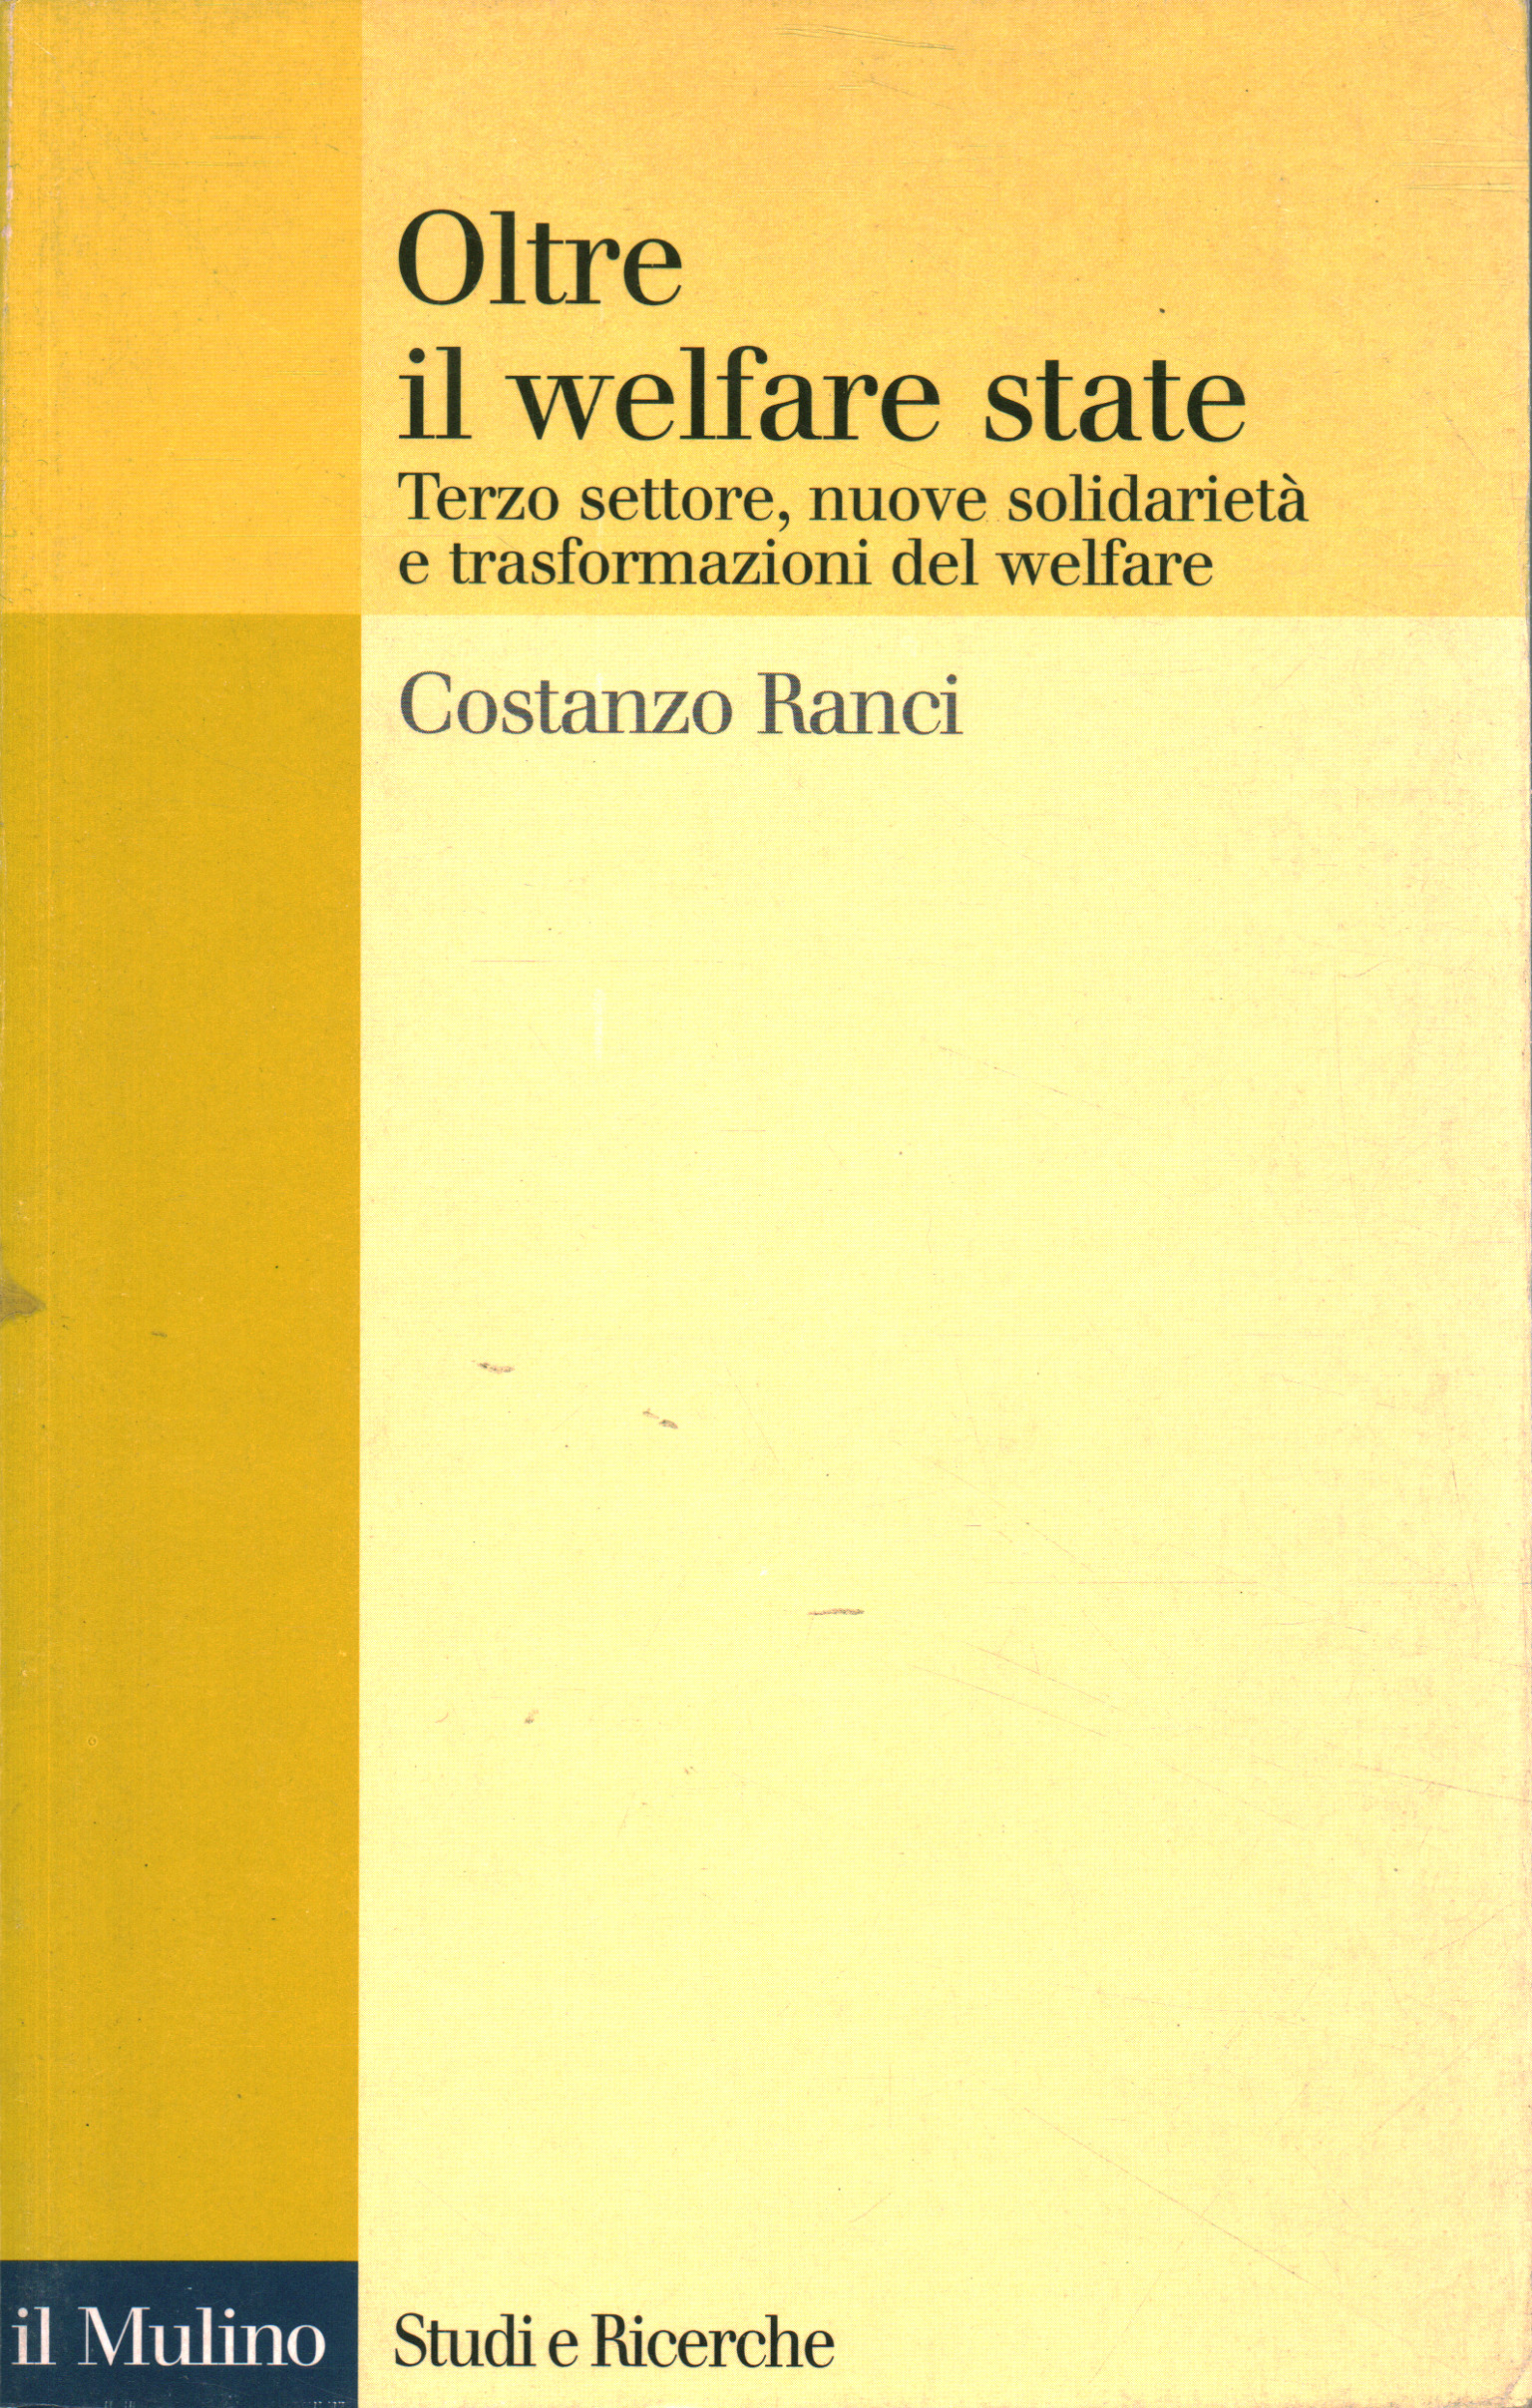 Au-delà de l'État providence, Costanzo Ranci